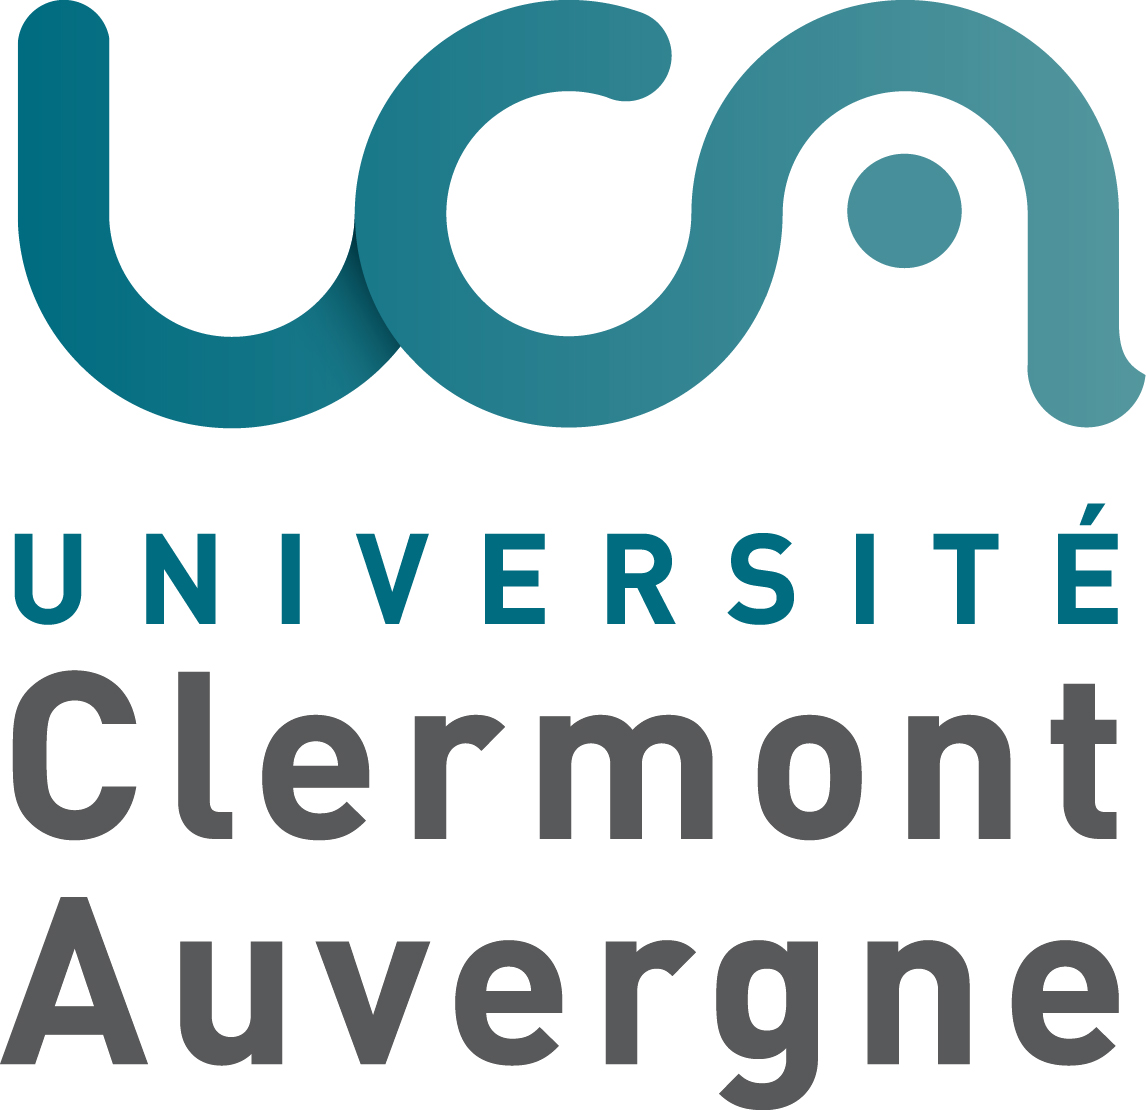 Universite Clermont-Auvergne logo